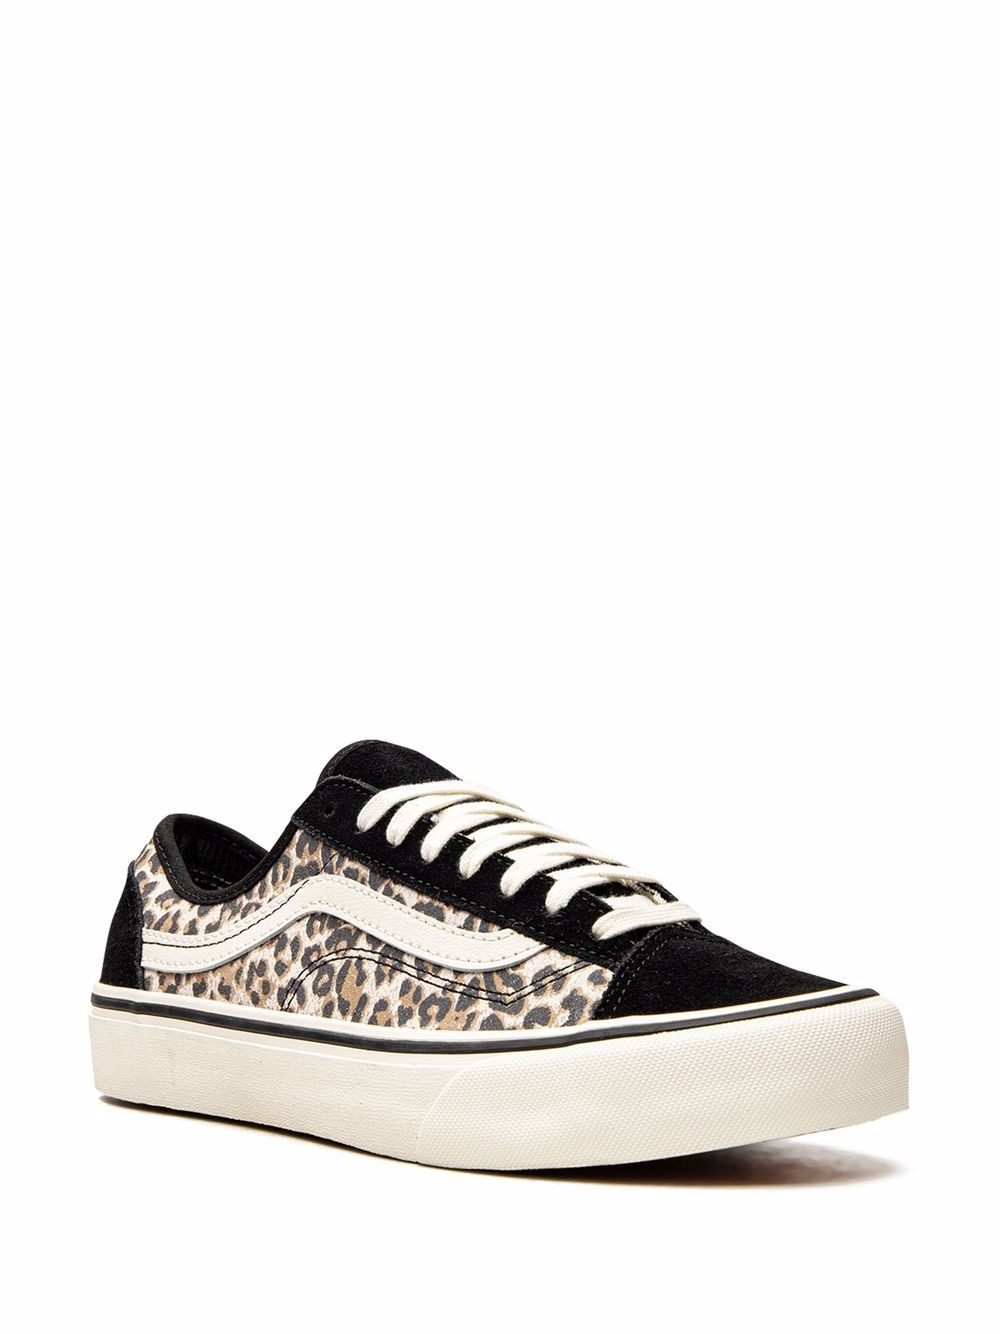 Shop Vans Style 36 "cheetah" Sneakers In Black